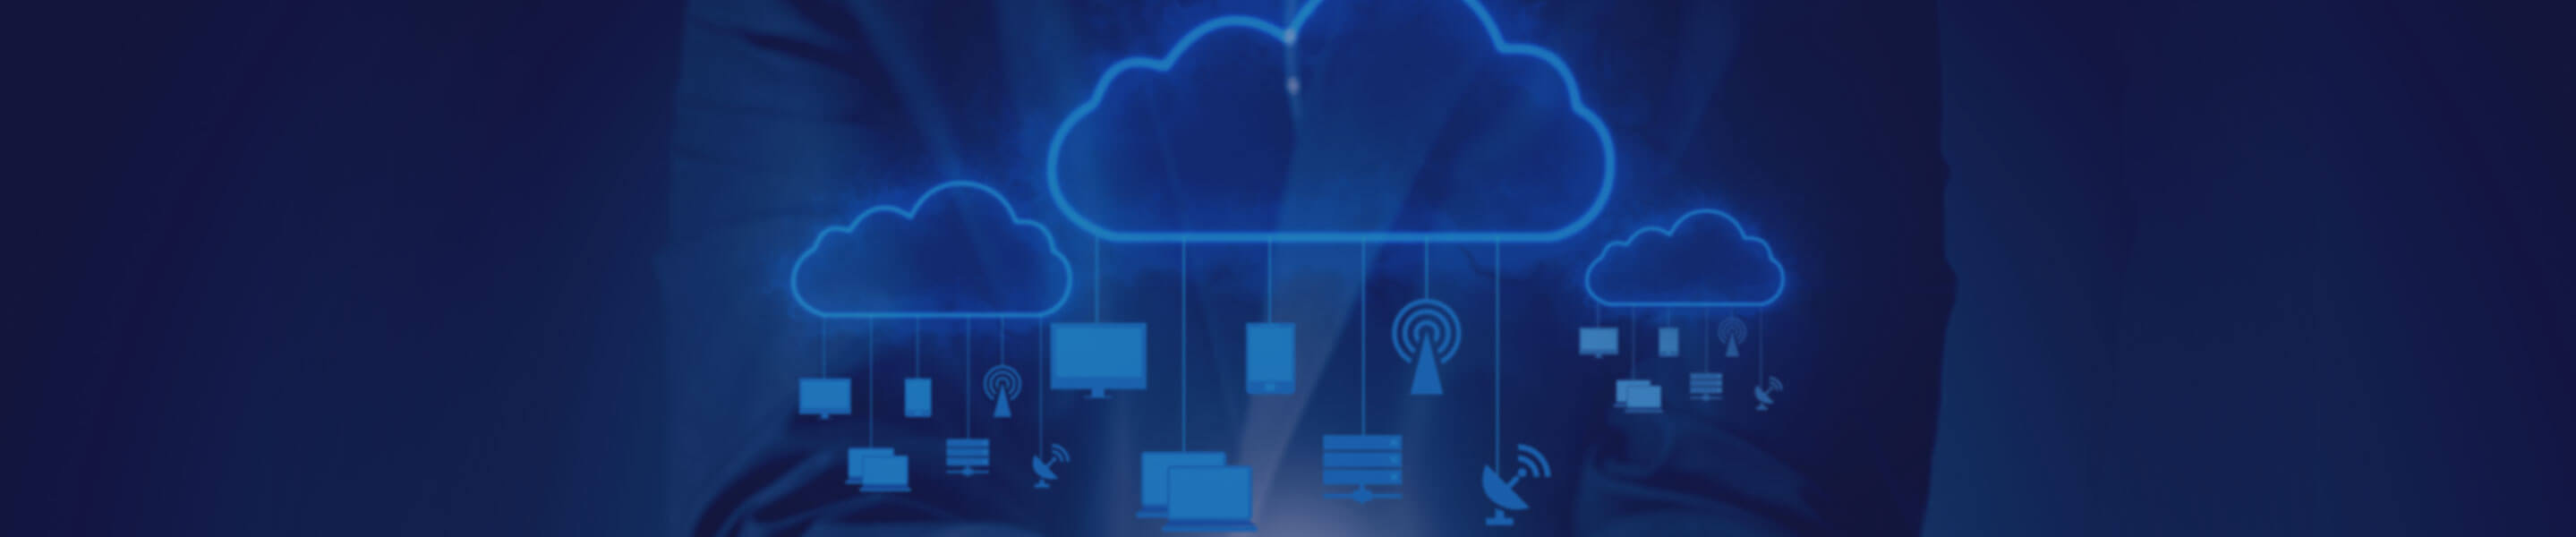 cloud-security-enterprise-page-banner